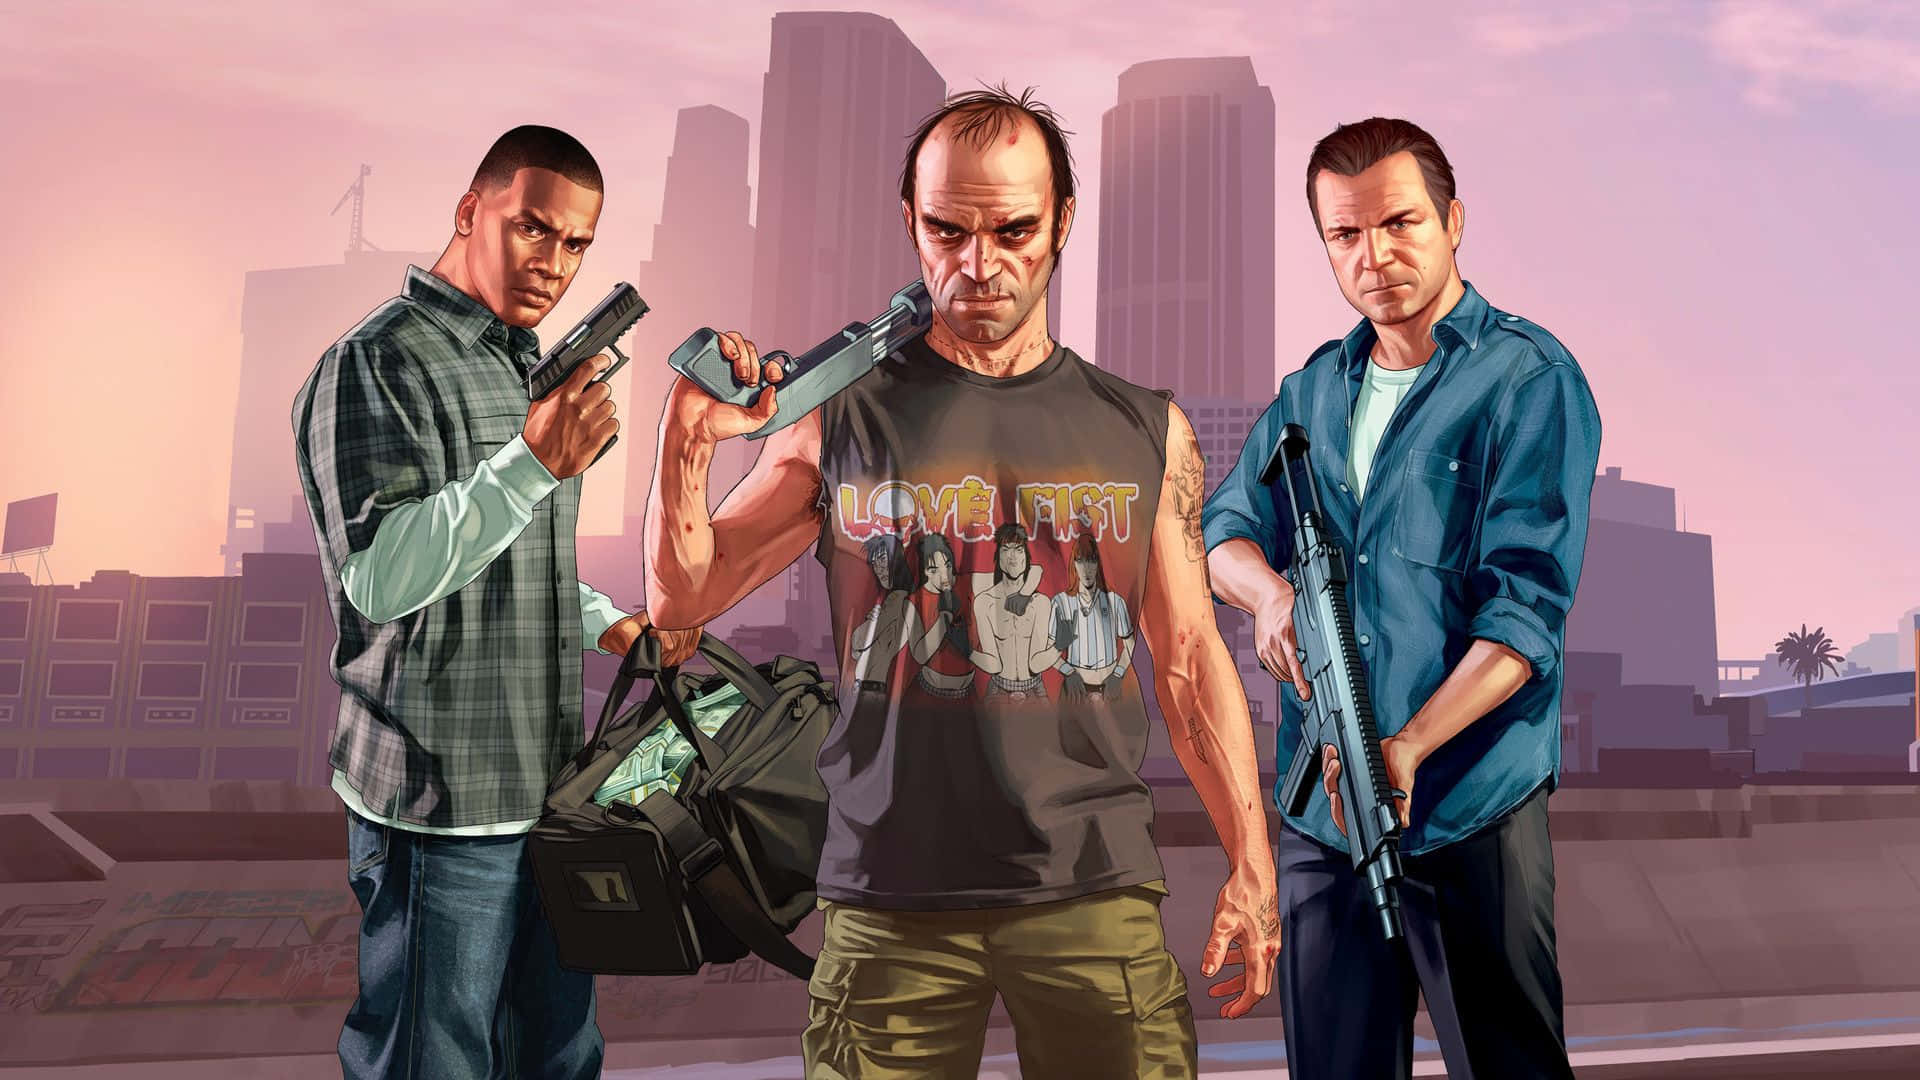 Nimmam Hochgeschwindigkeitsraubüberfall Auf Grand Theft Auto V: Online Teil. Wallpaper